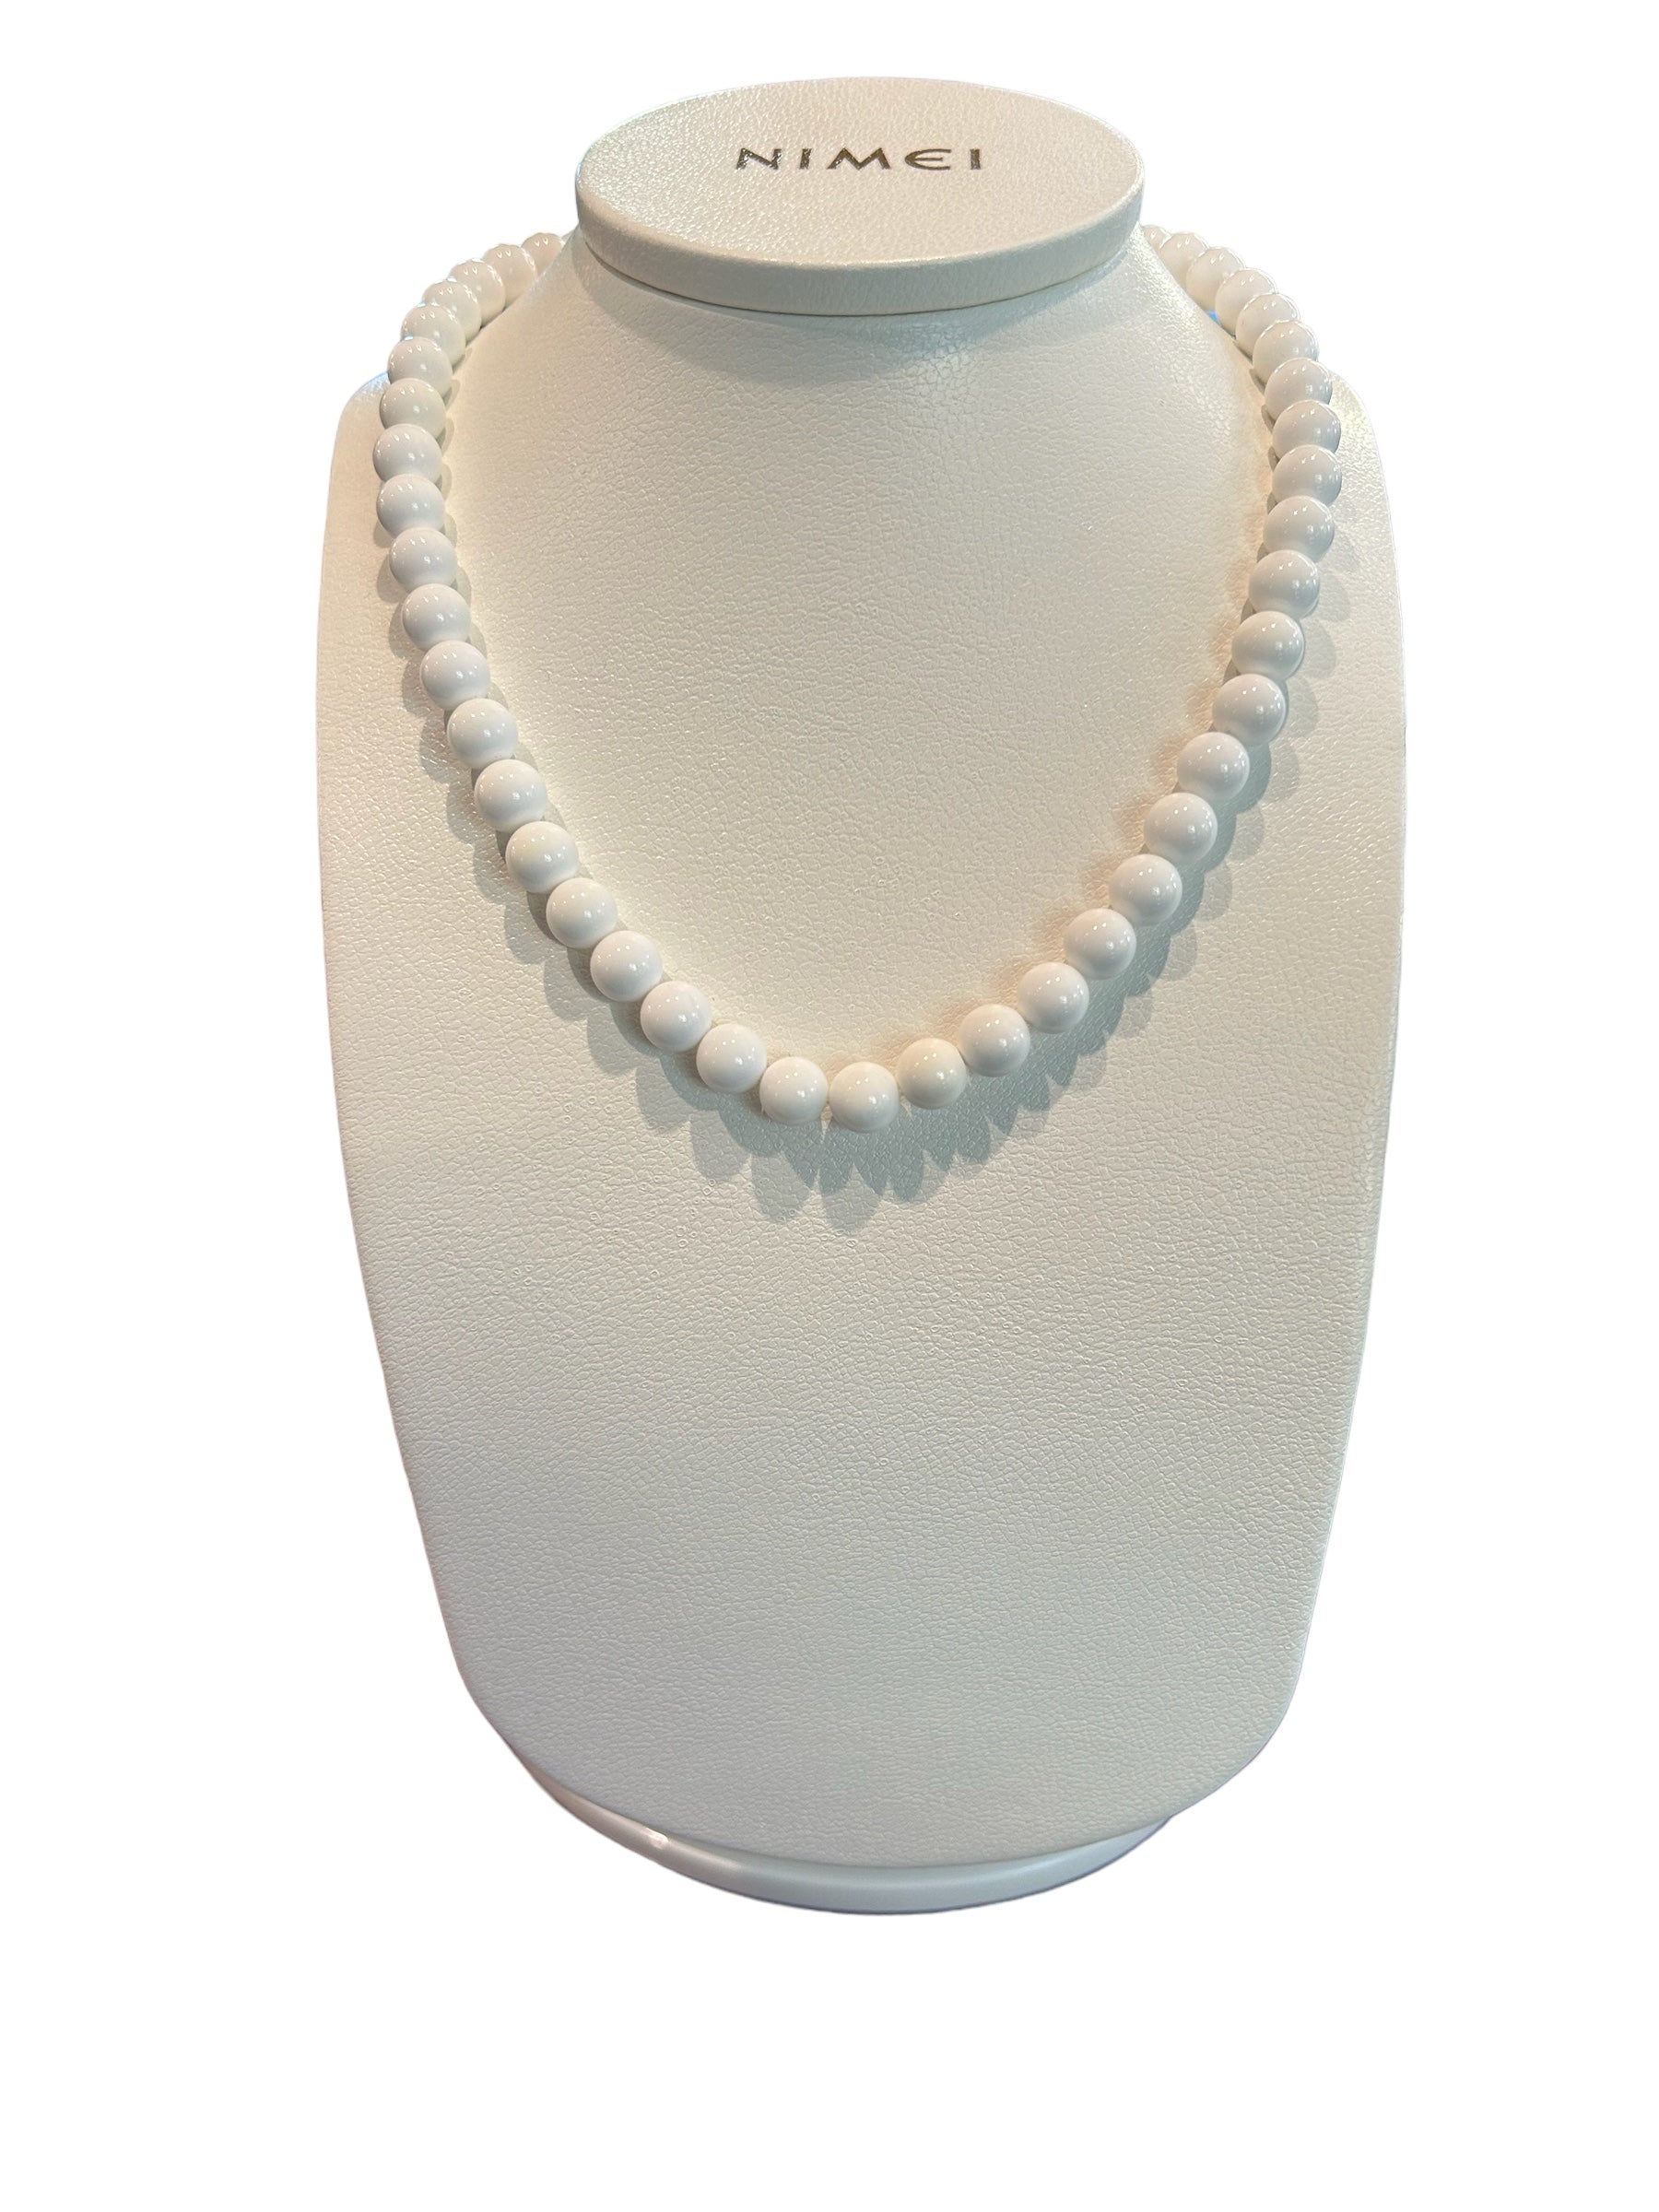 Collana oro bianco e perle - 1PSB080_42C31